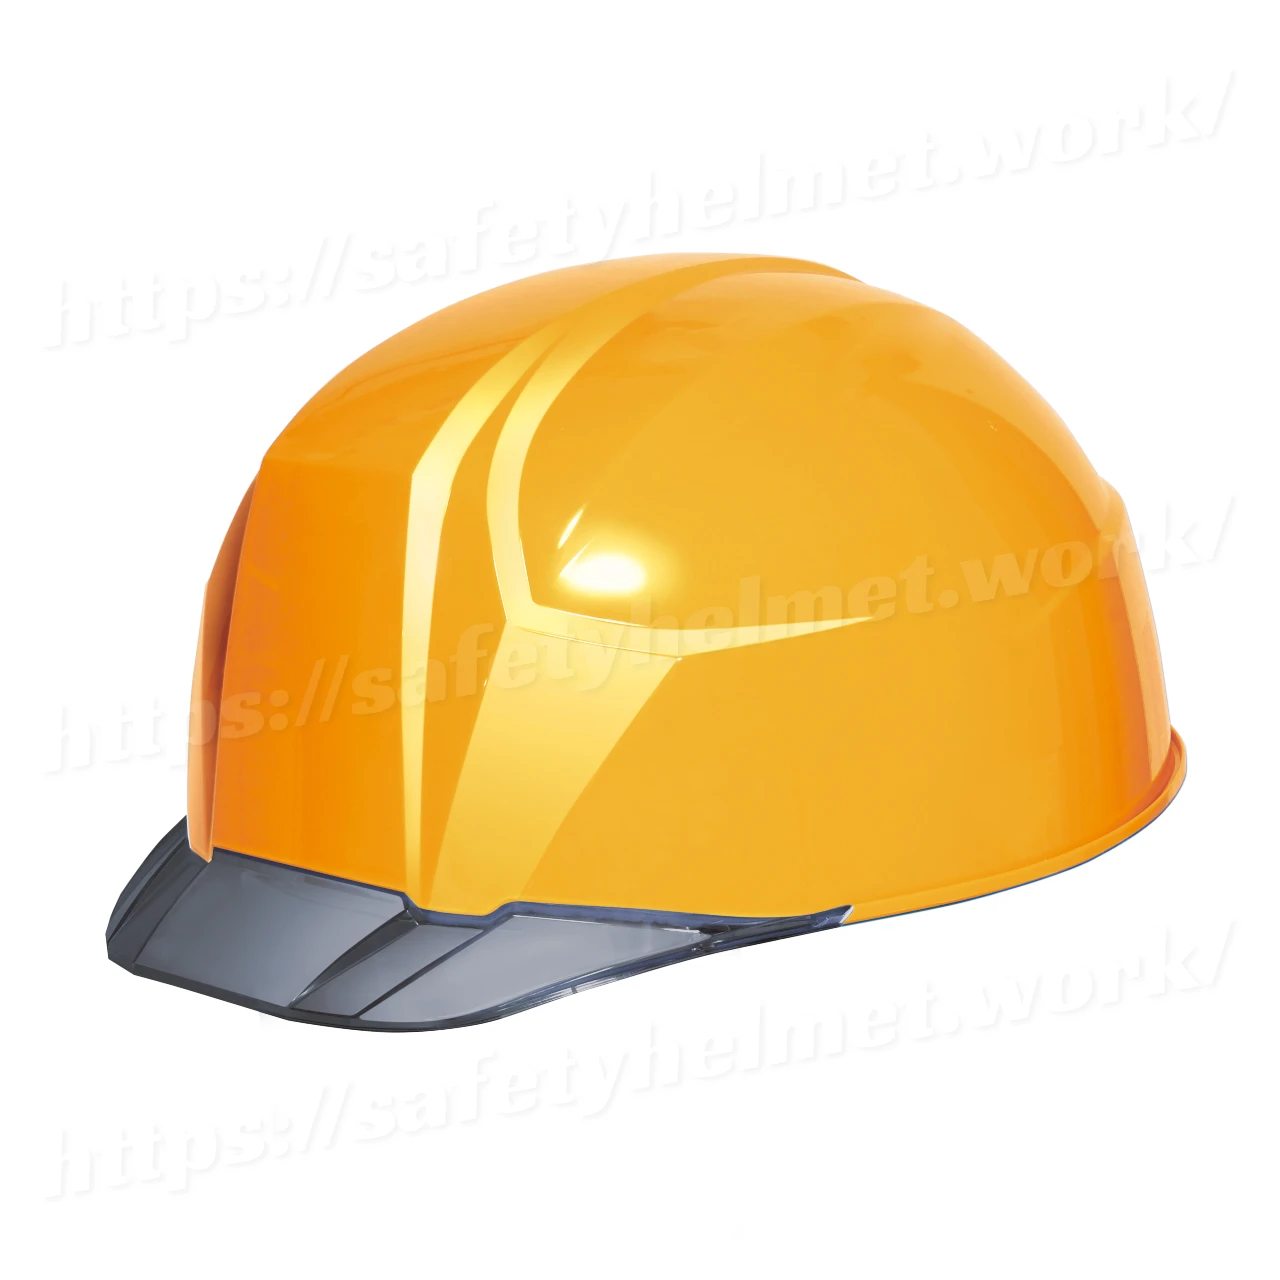 dic-lightest-helmet-keijin-clearvisor-aa23c-yellow-smoke